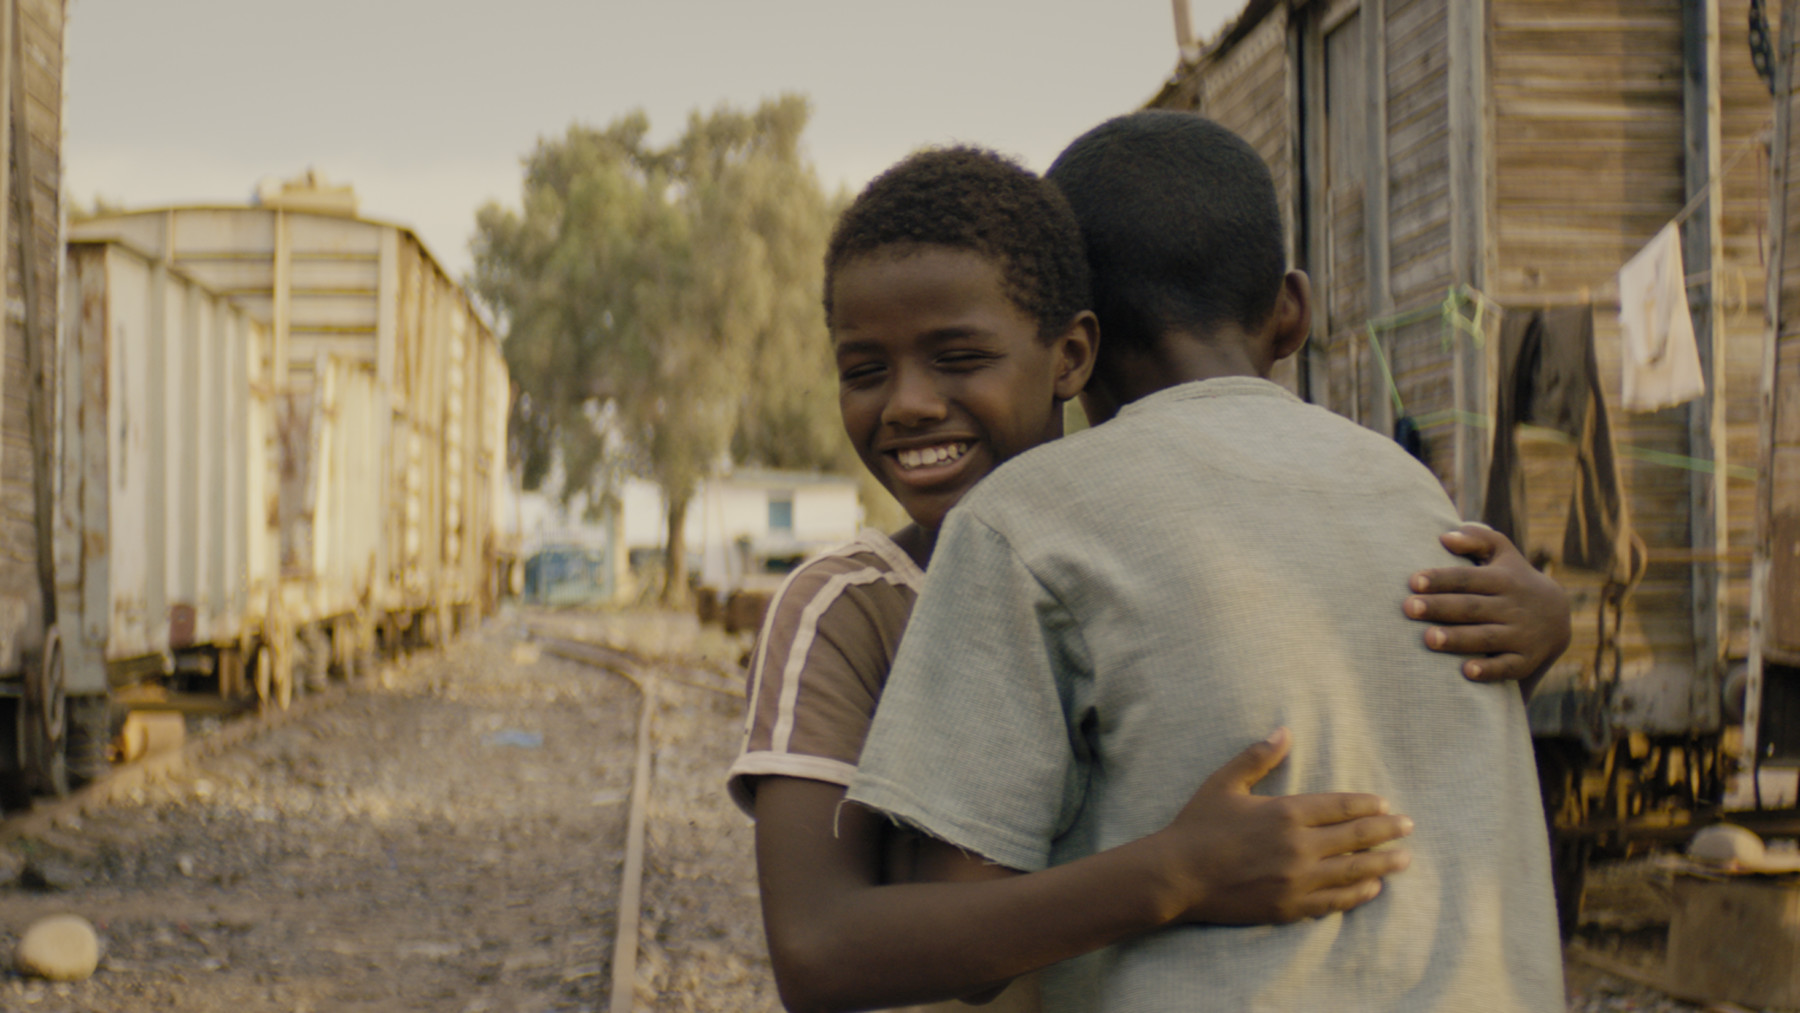 Dans une rue caillouteuse, un jeune garçon salue un autre garçon en le serrant dans ses bras.